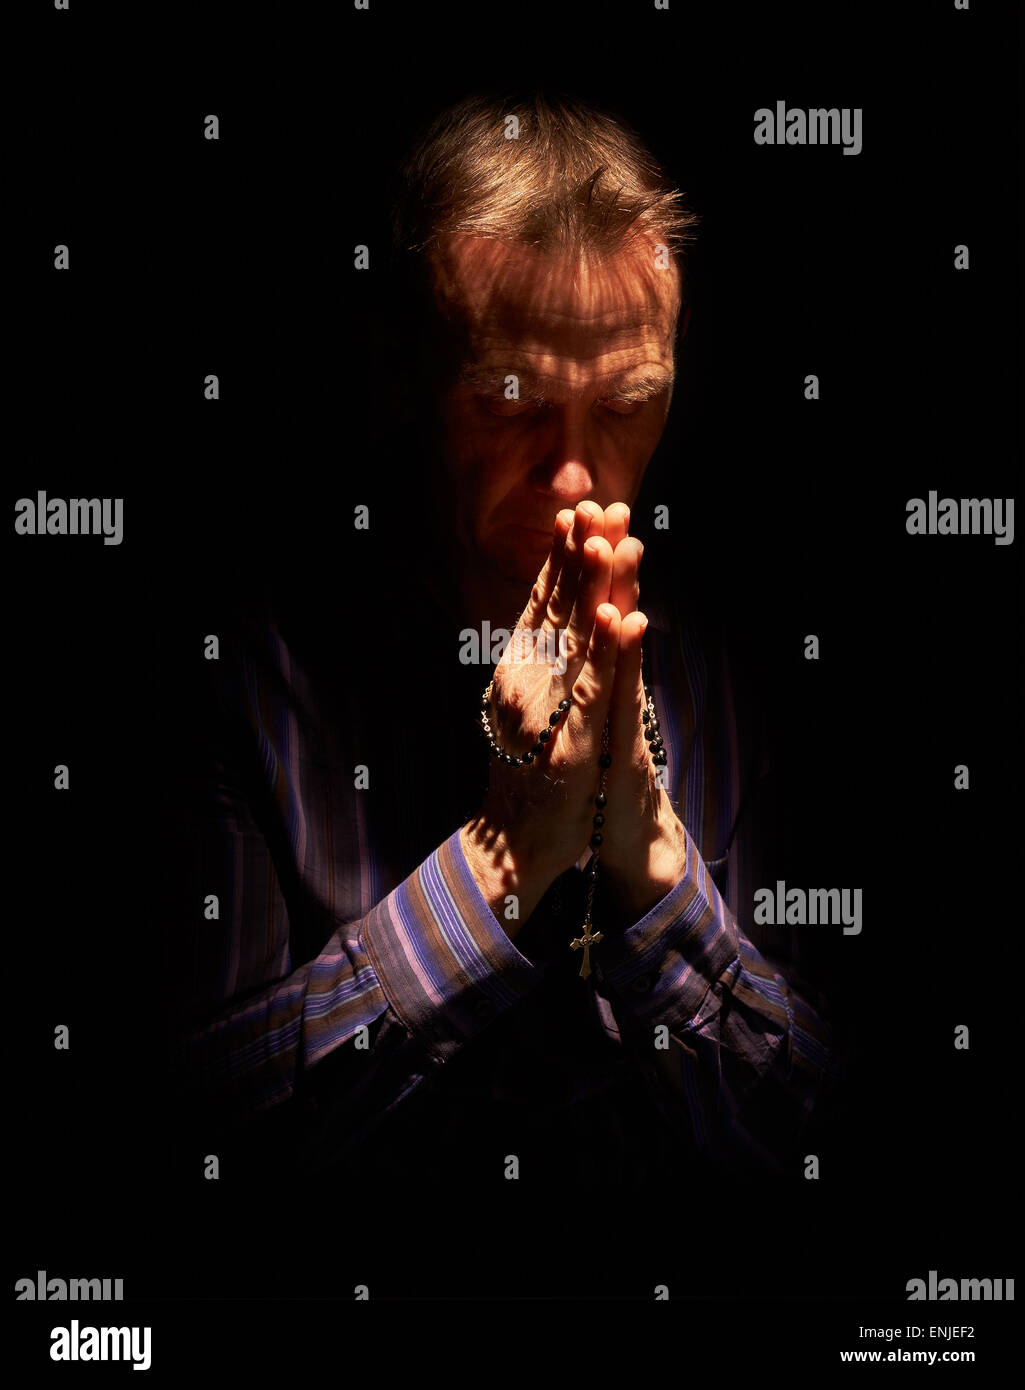 En vue de face d'un homme priant dans l'obscurité avec un rayon de soleil qui brille sur lui Banque D'Images